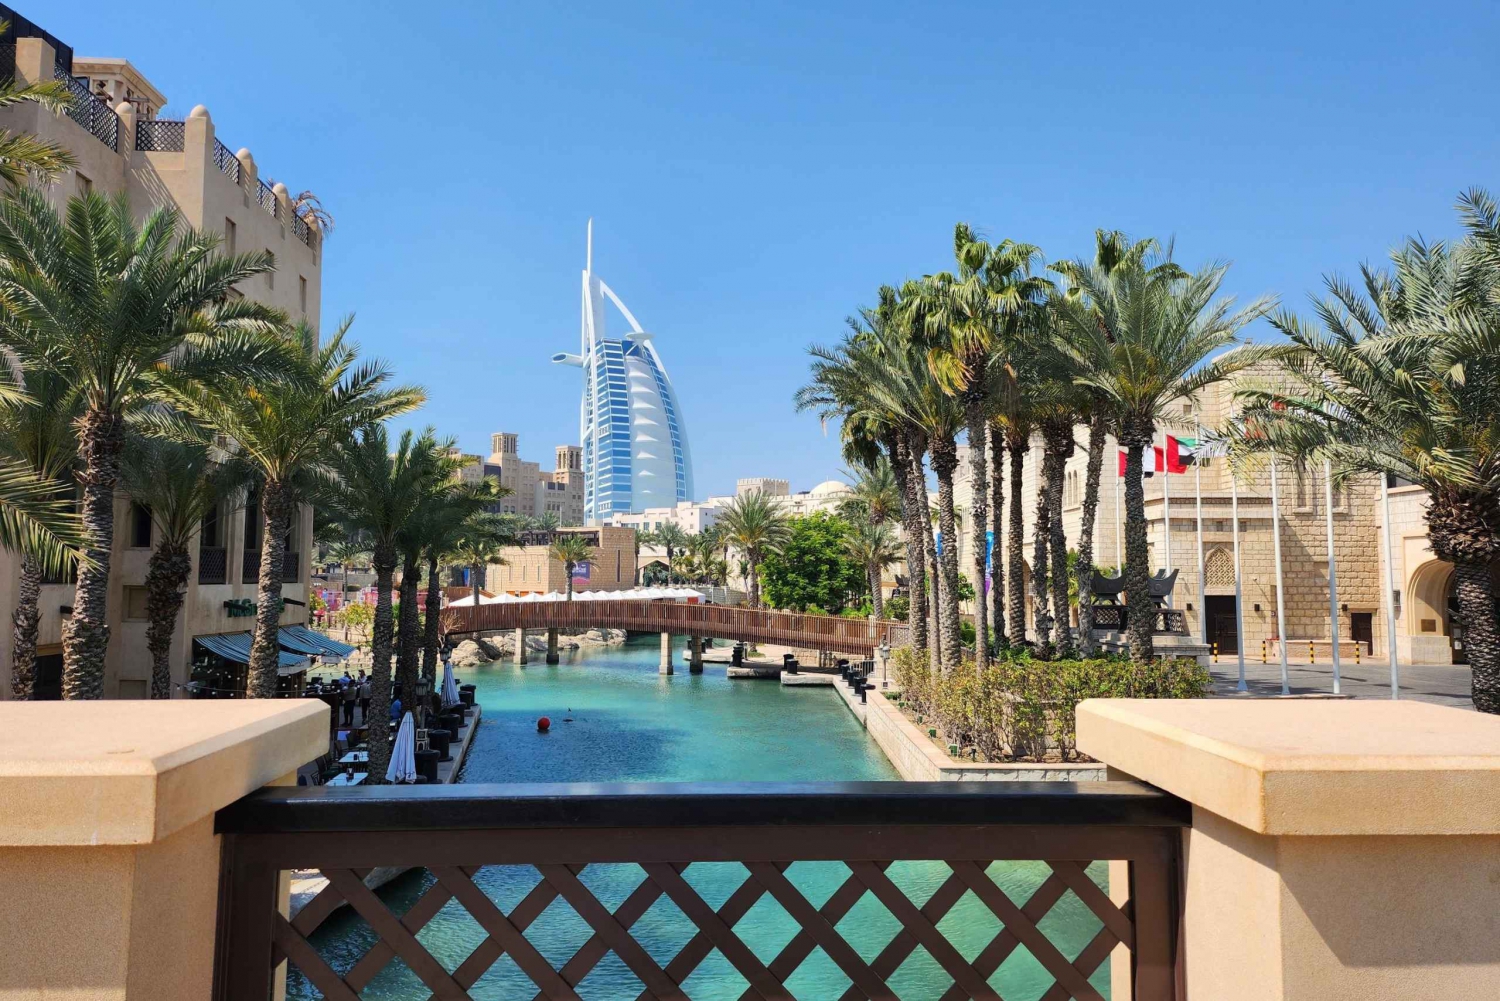 Dubai: City Highlights, Frame entry, Souks and blue mosque